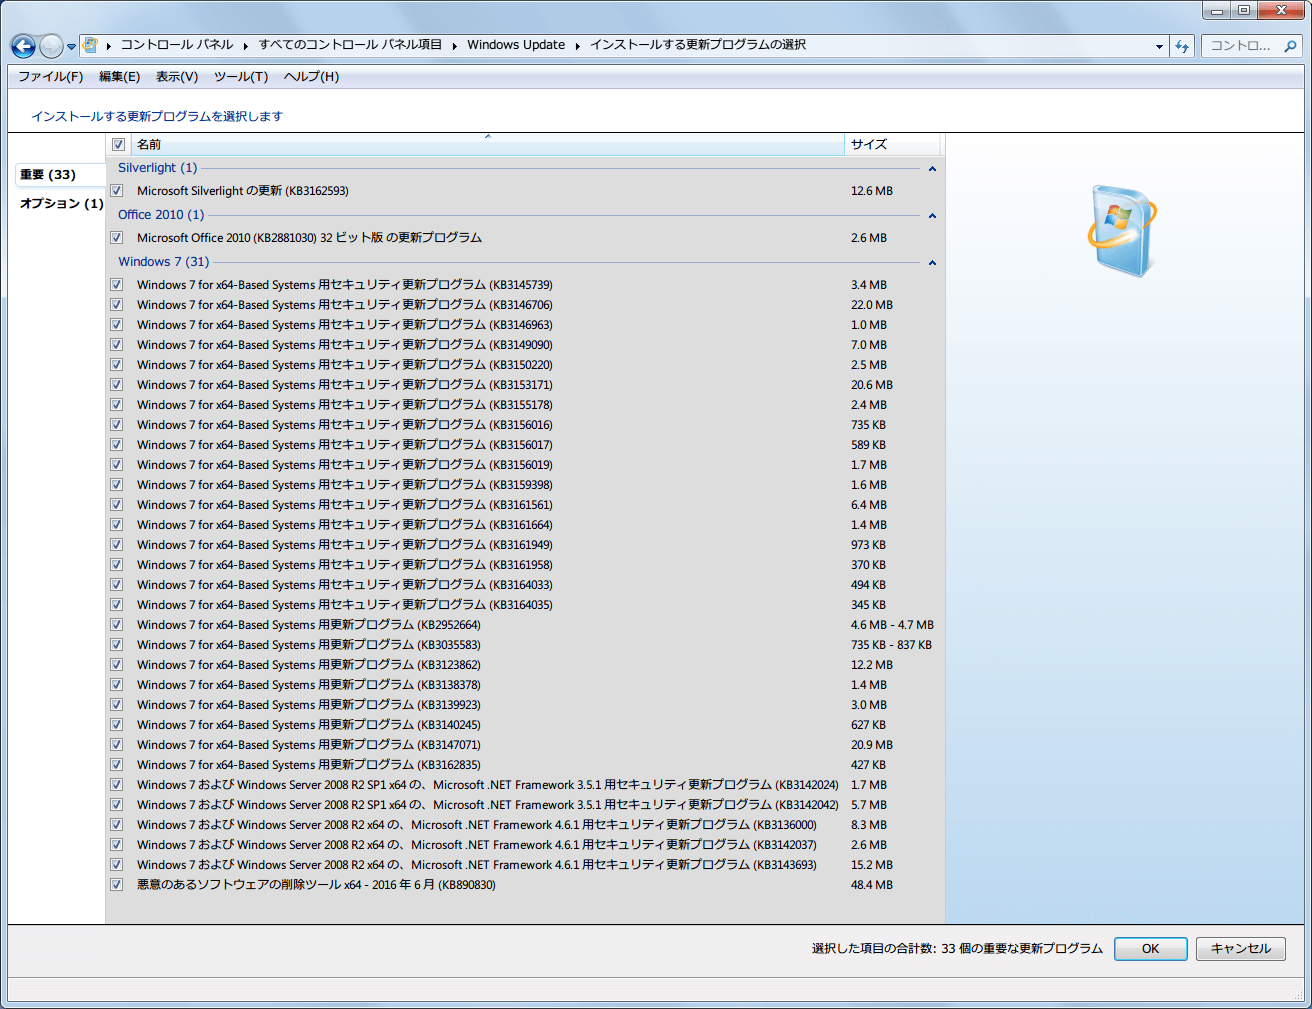 Windows 7 64bit Windows Update 重要 2016年4月～6月分リスト